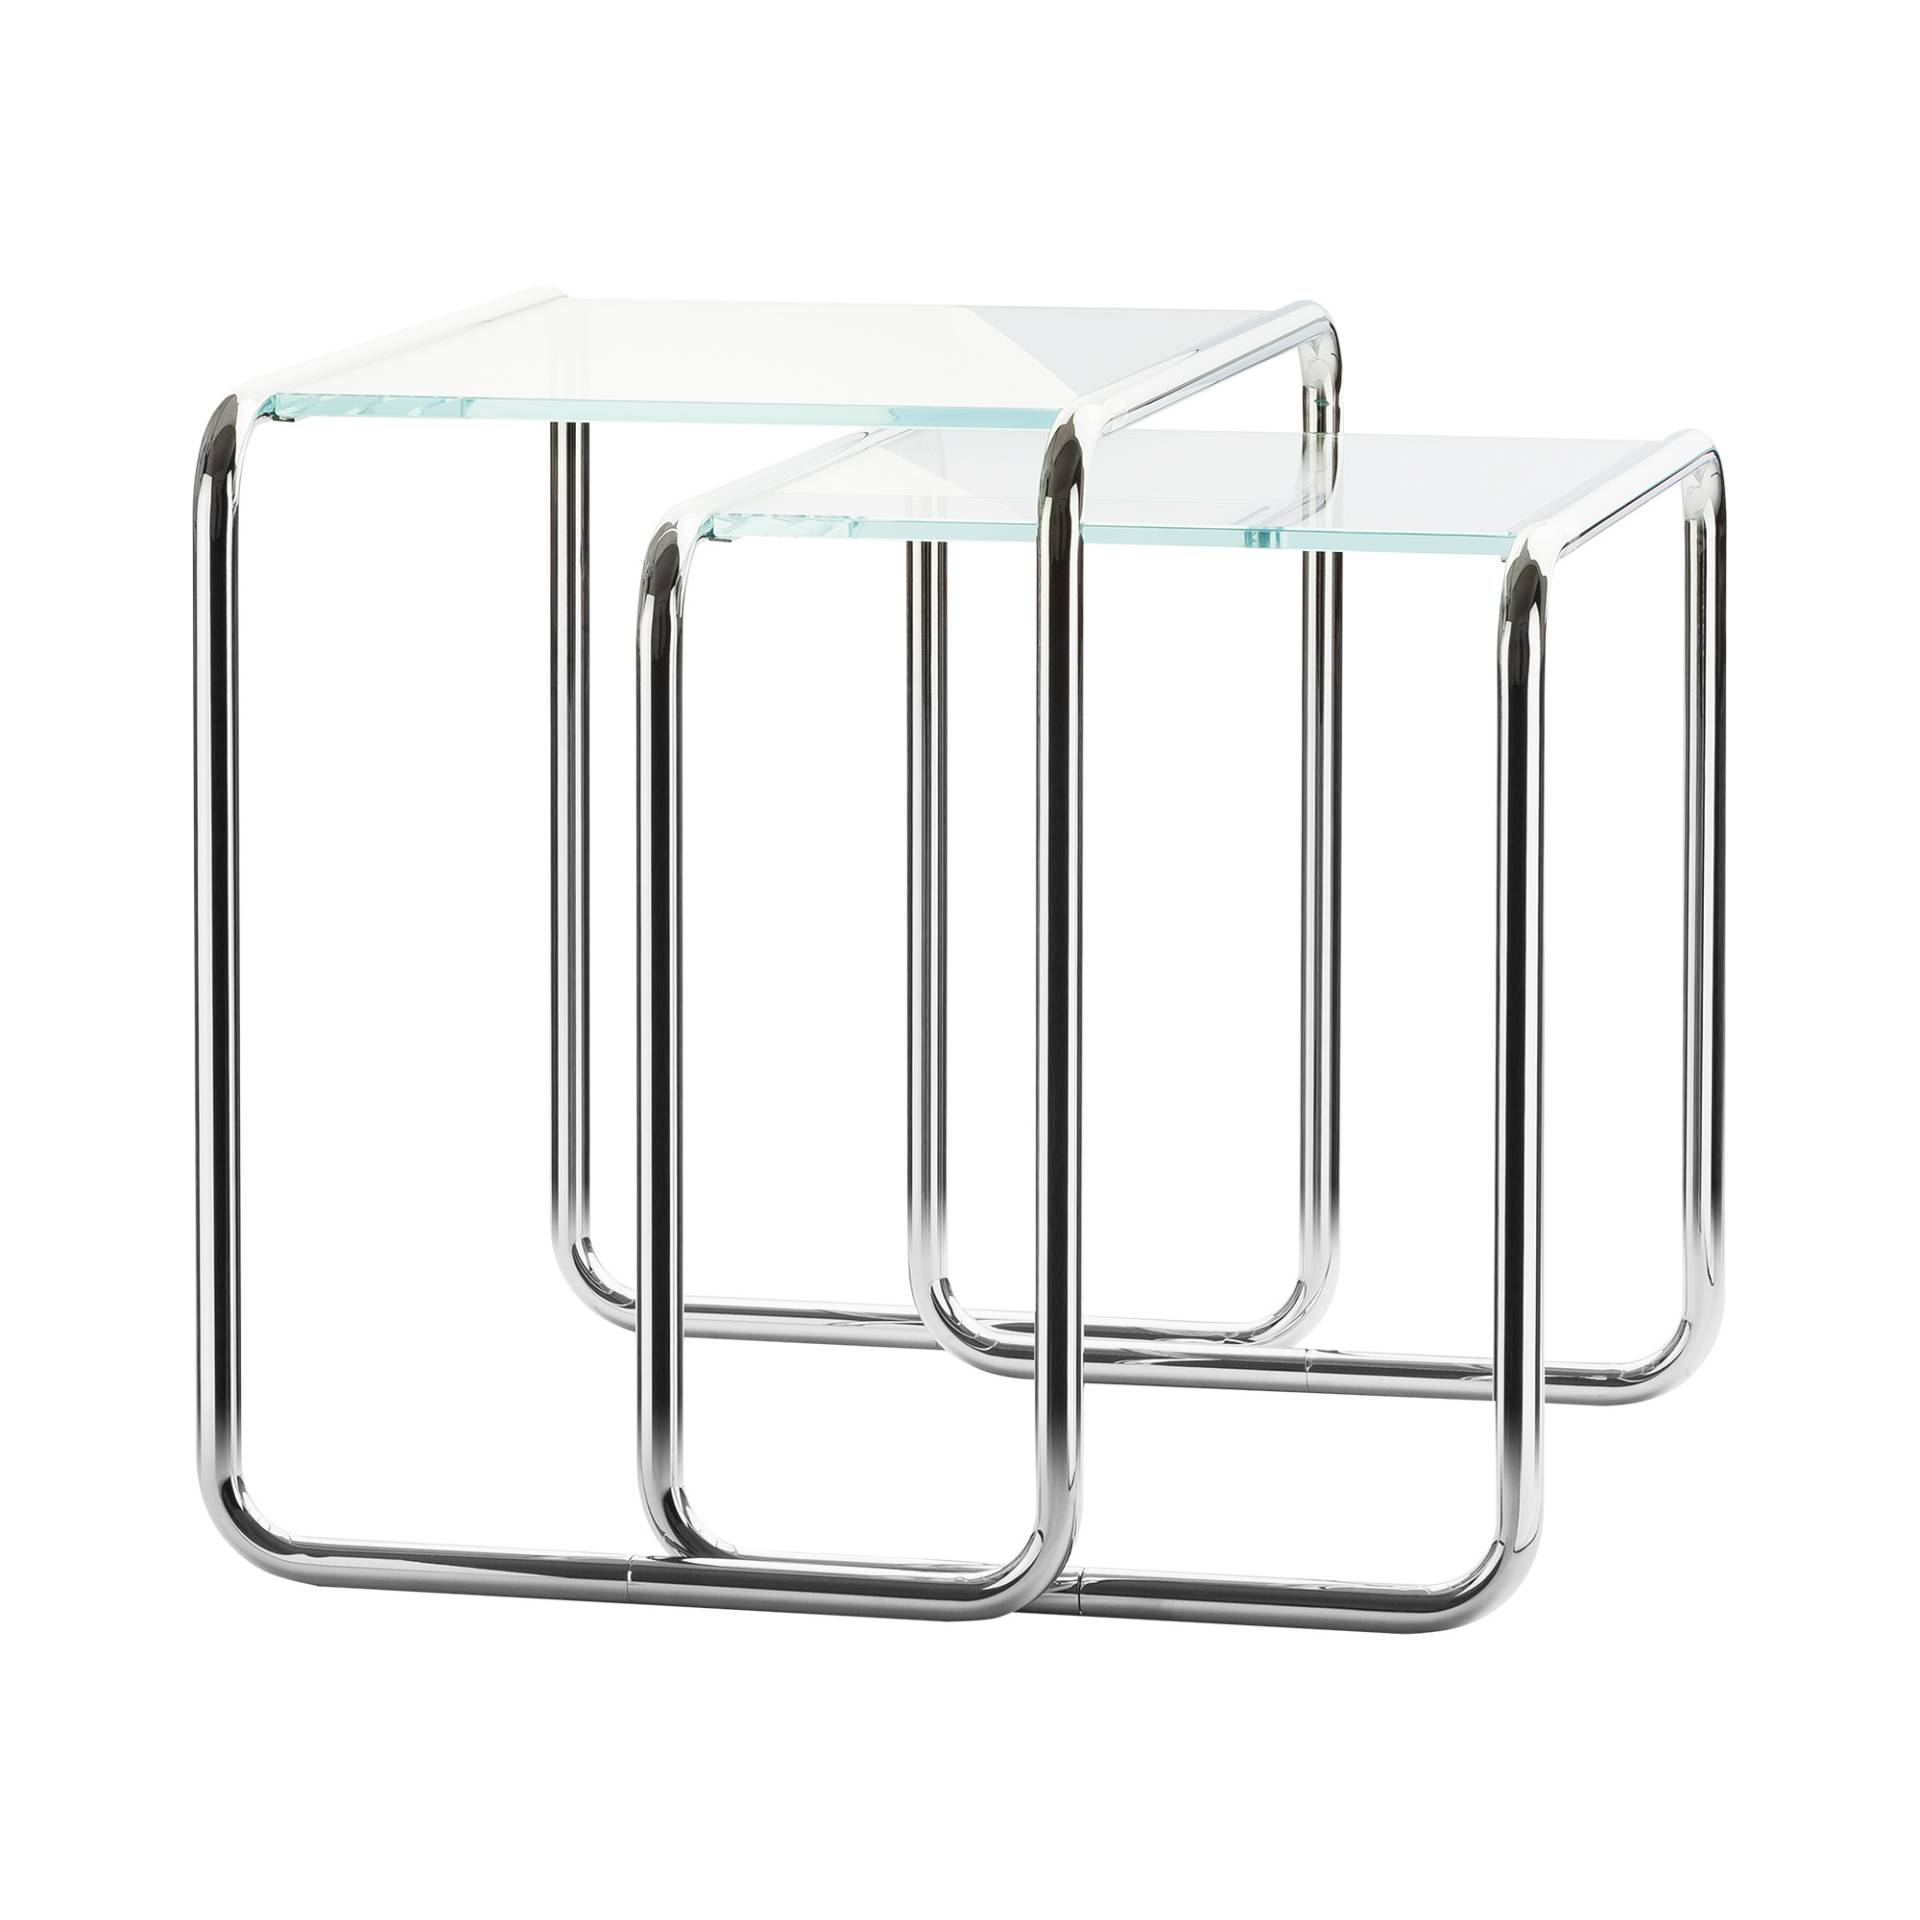 Thonet - B 9 Beistelltisch 2er Set Glas - transparent/Glas optiwhite Diamantschliff/2 Tische: B 9 a, b/Gestell Stahlrohr vechromt von Thonet